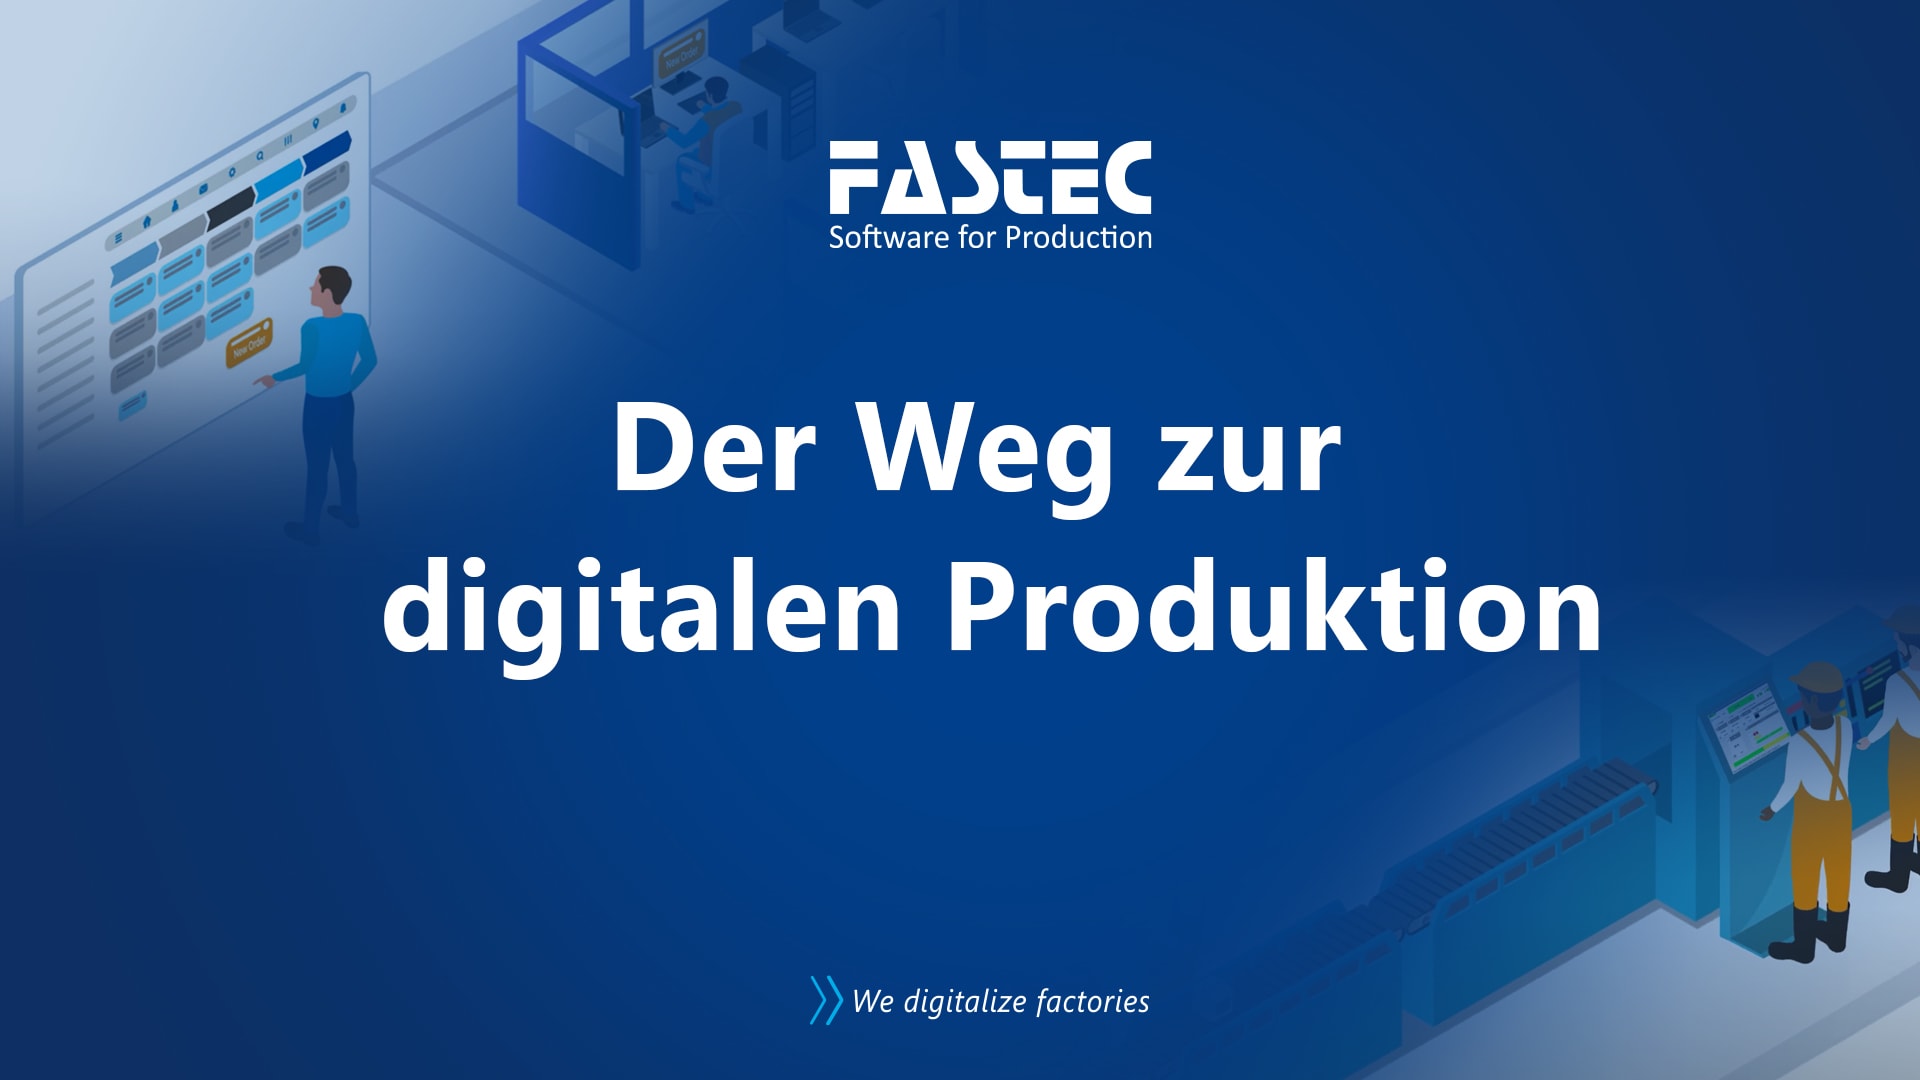 Video "Der Weg zur digitalen Produktion" von FASTEC